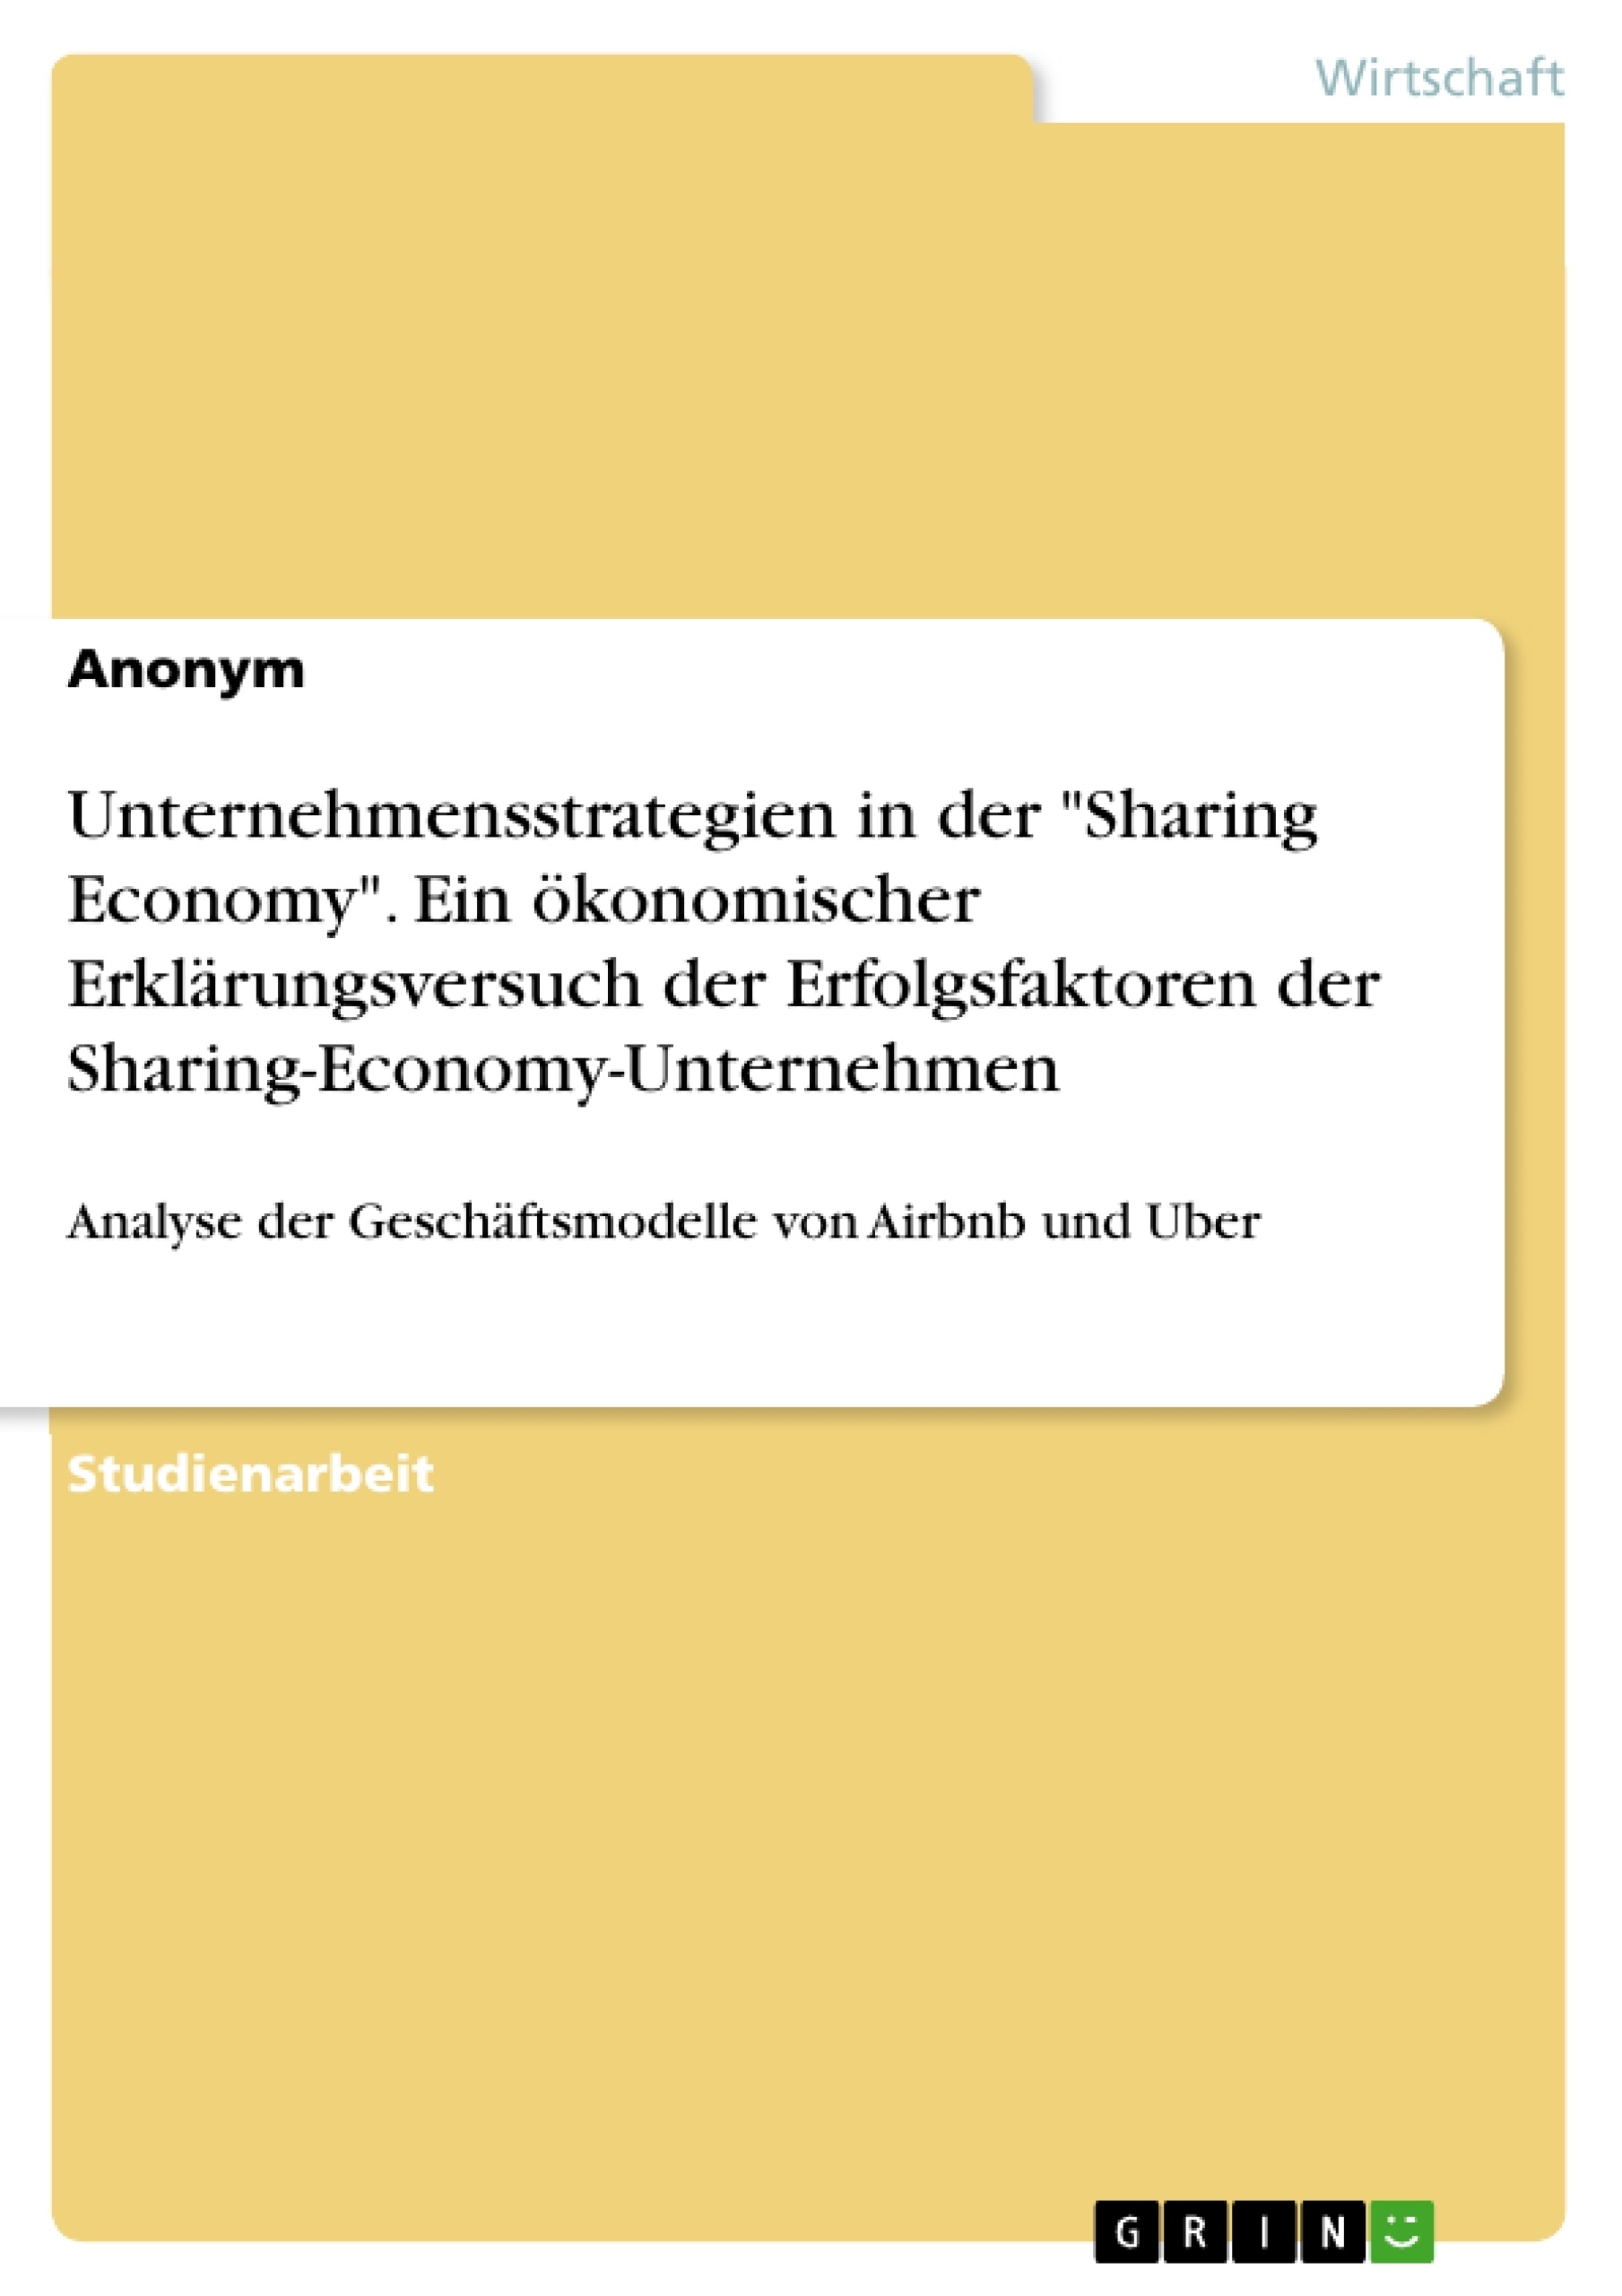 Title: Unternehmensstrategien in der "Sharing Economy". Ein ökonomischer Erklärungsversuch der Erfolgsfaktoren der Sharing-Economy-Unternehmen